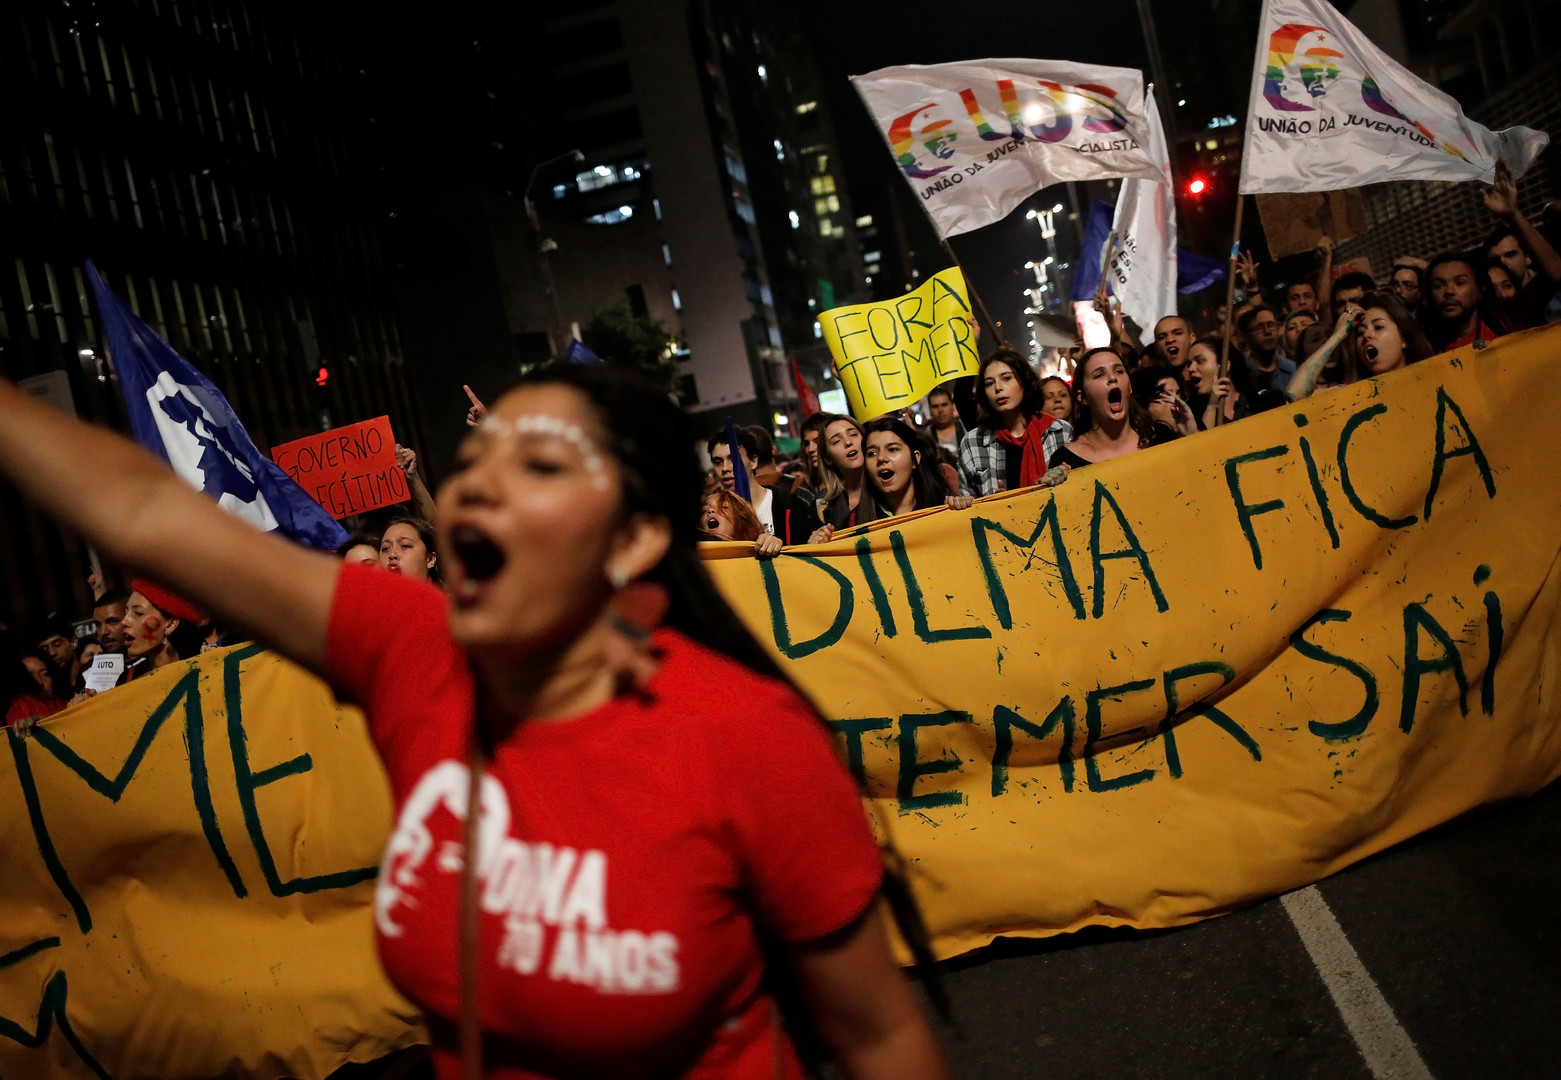 Dilma Rousseff : «Ma destitution est un coup d’Etat» (EXCLUSIF)